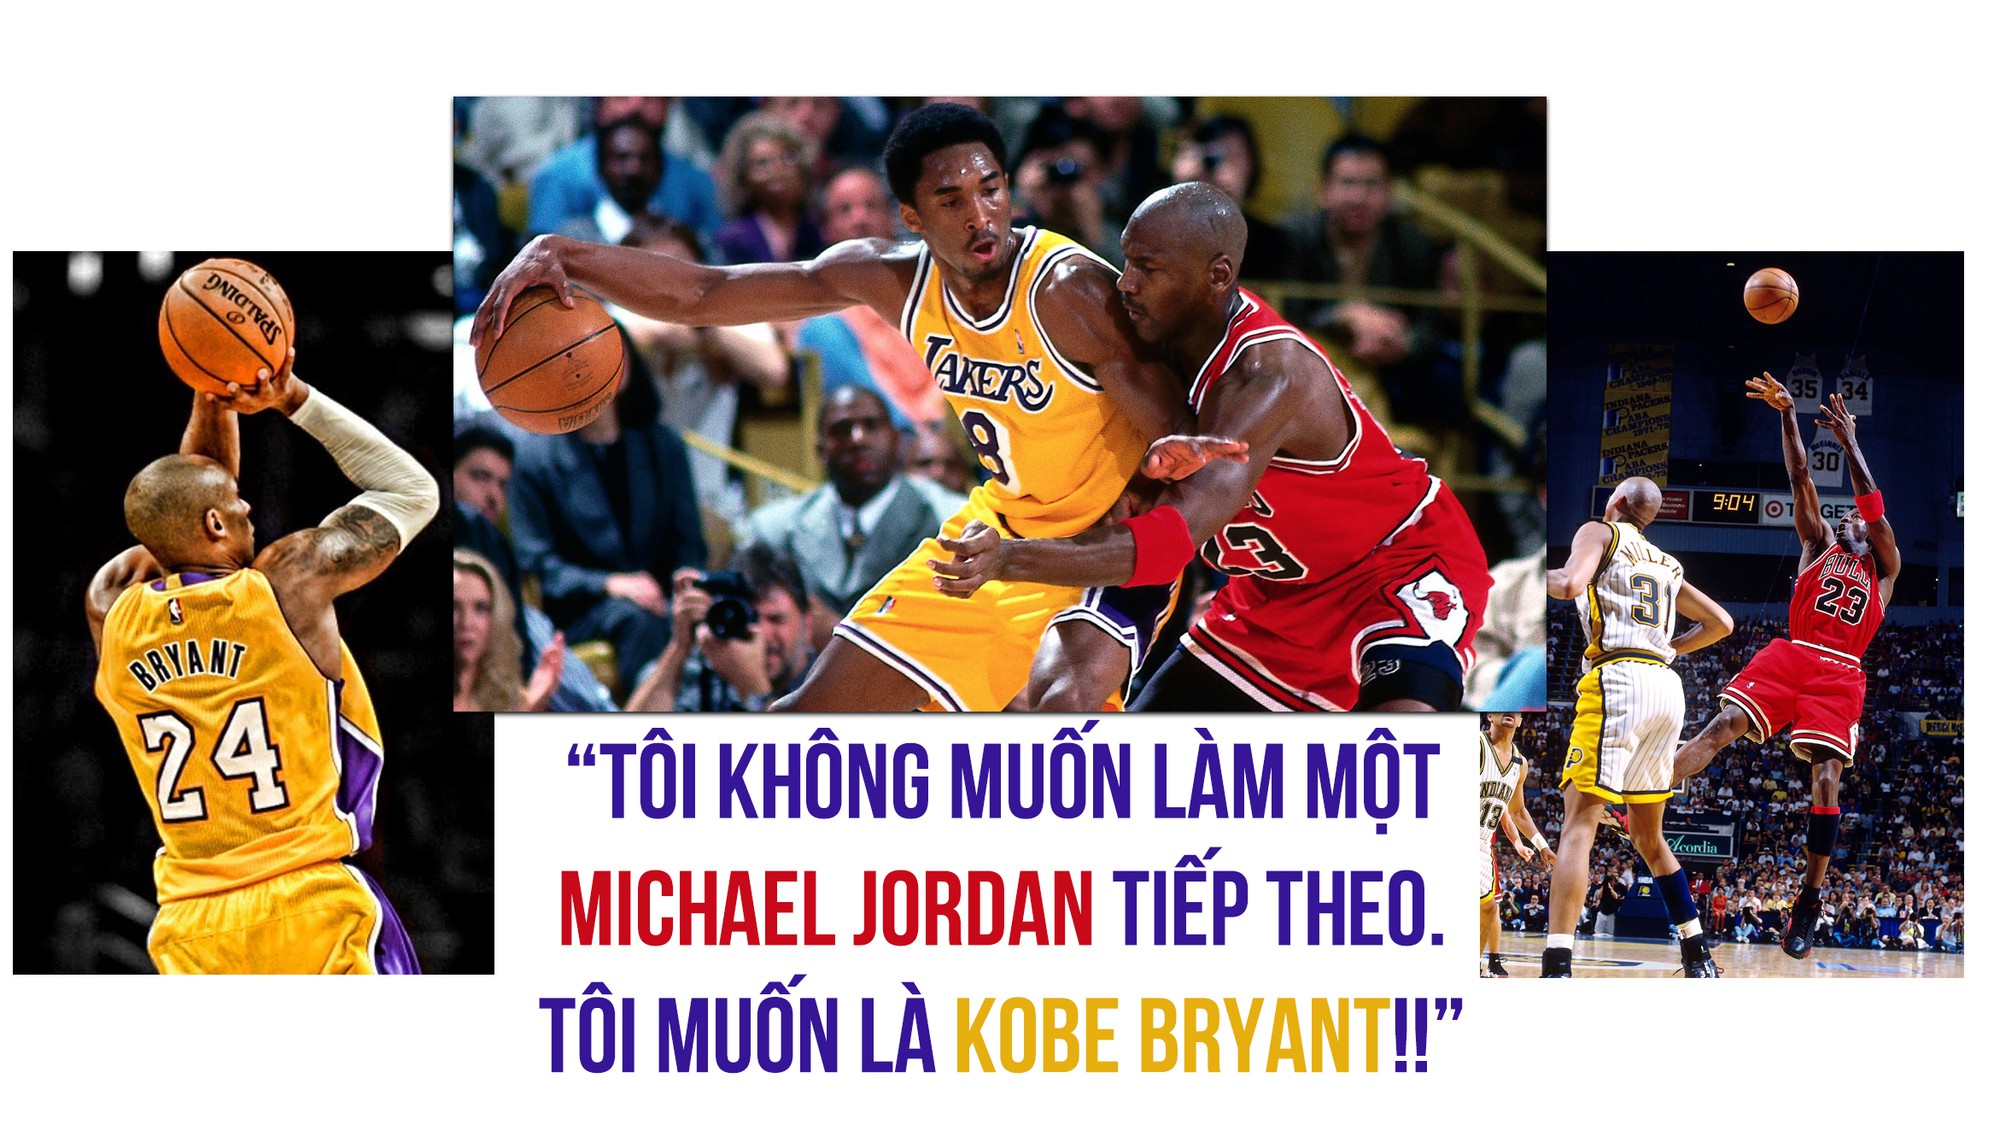 Những con số ấn tượng trong sự nghiệp của huyền thoại Kobe Bryant